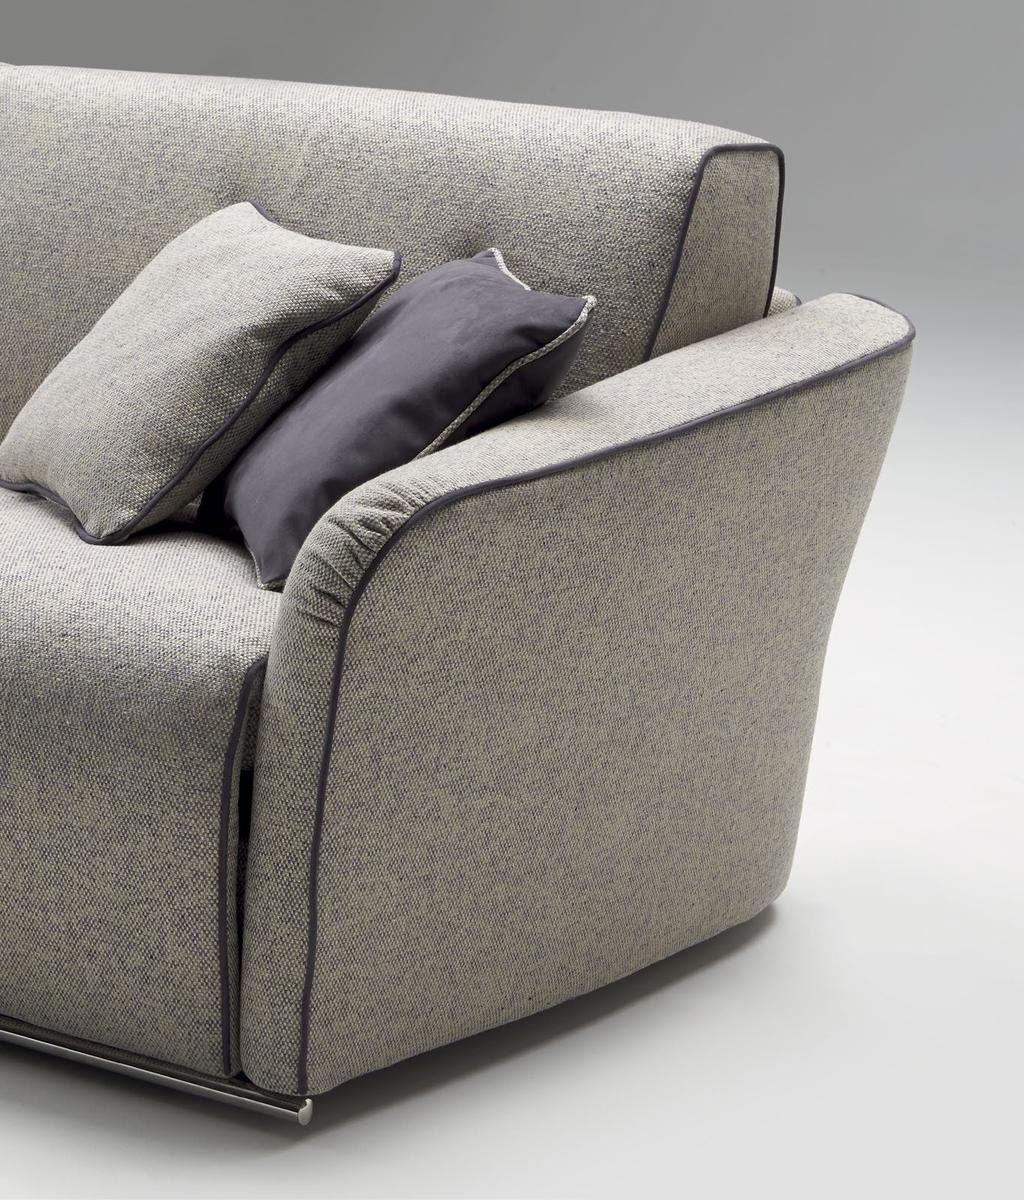 GROOVE Groove design Milano Bedding Con GROOVE, Milano Bedding vuole non solo dare importanza al comfort del letto, con i vari materassi disponibili, ma anche al comfort di seduta e al design del